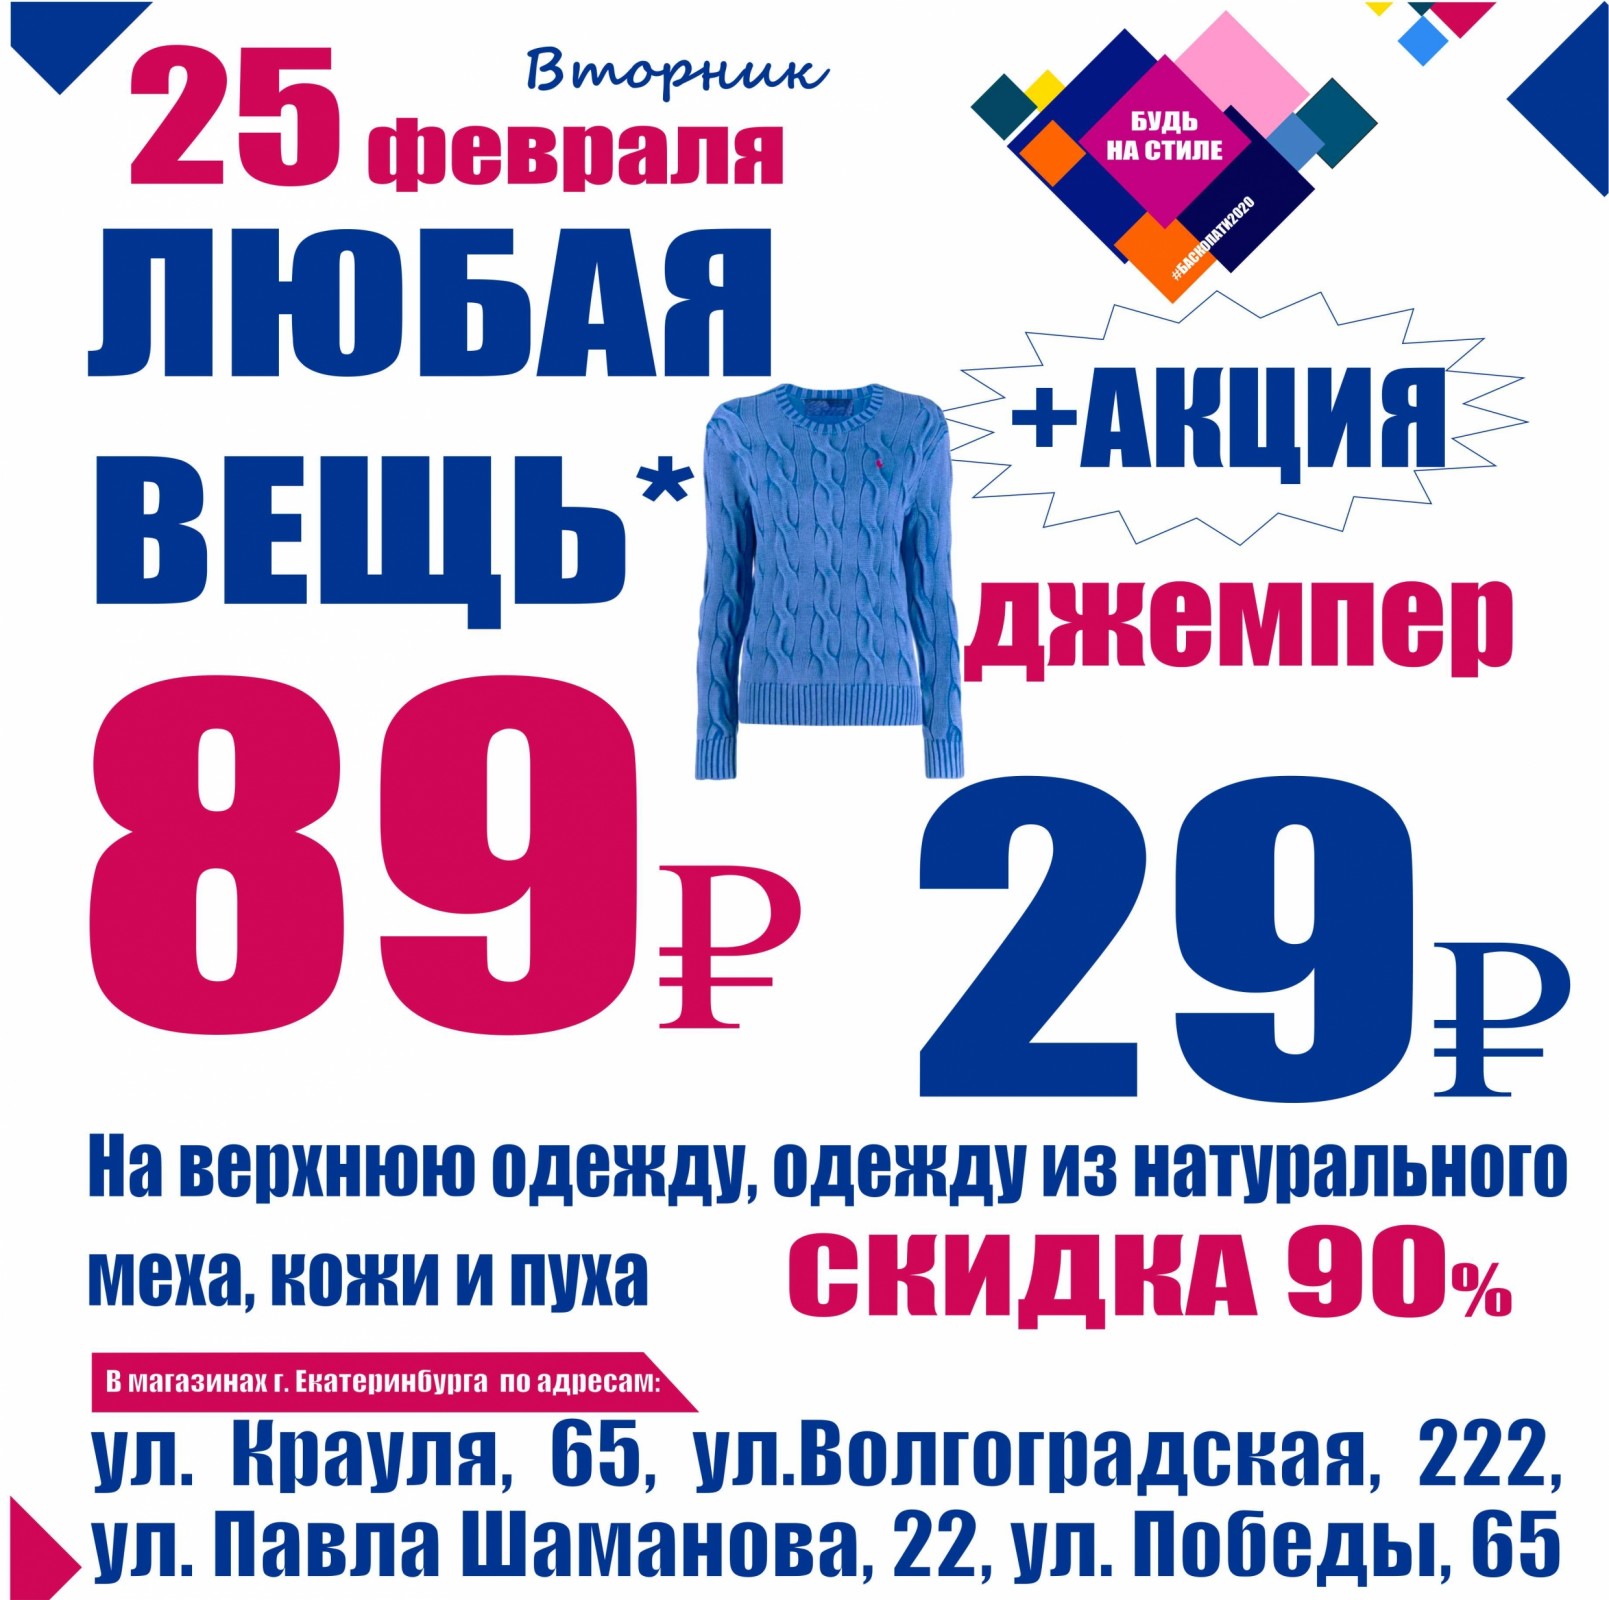 Баско пати Москва секонд хенд. Акция свитера Гю вас. Спортивный магазин проводит акцию любой джемпер по цене 380.